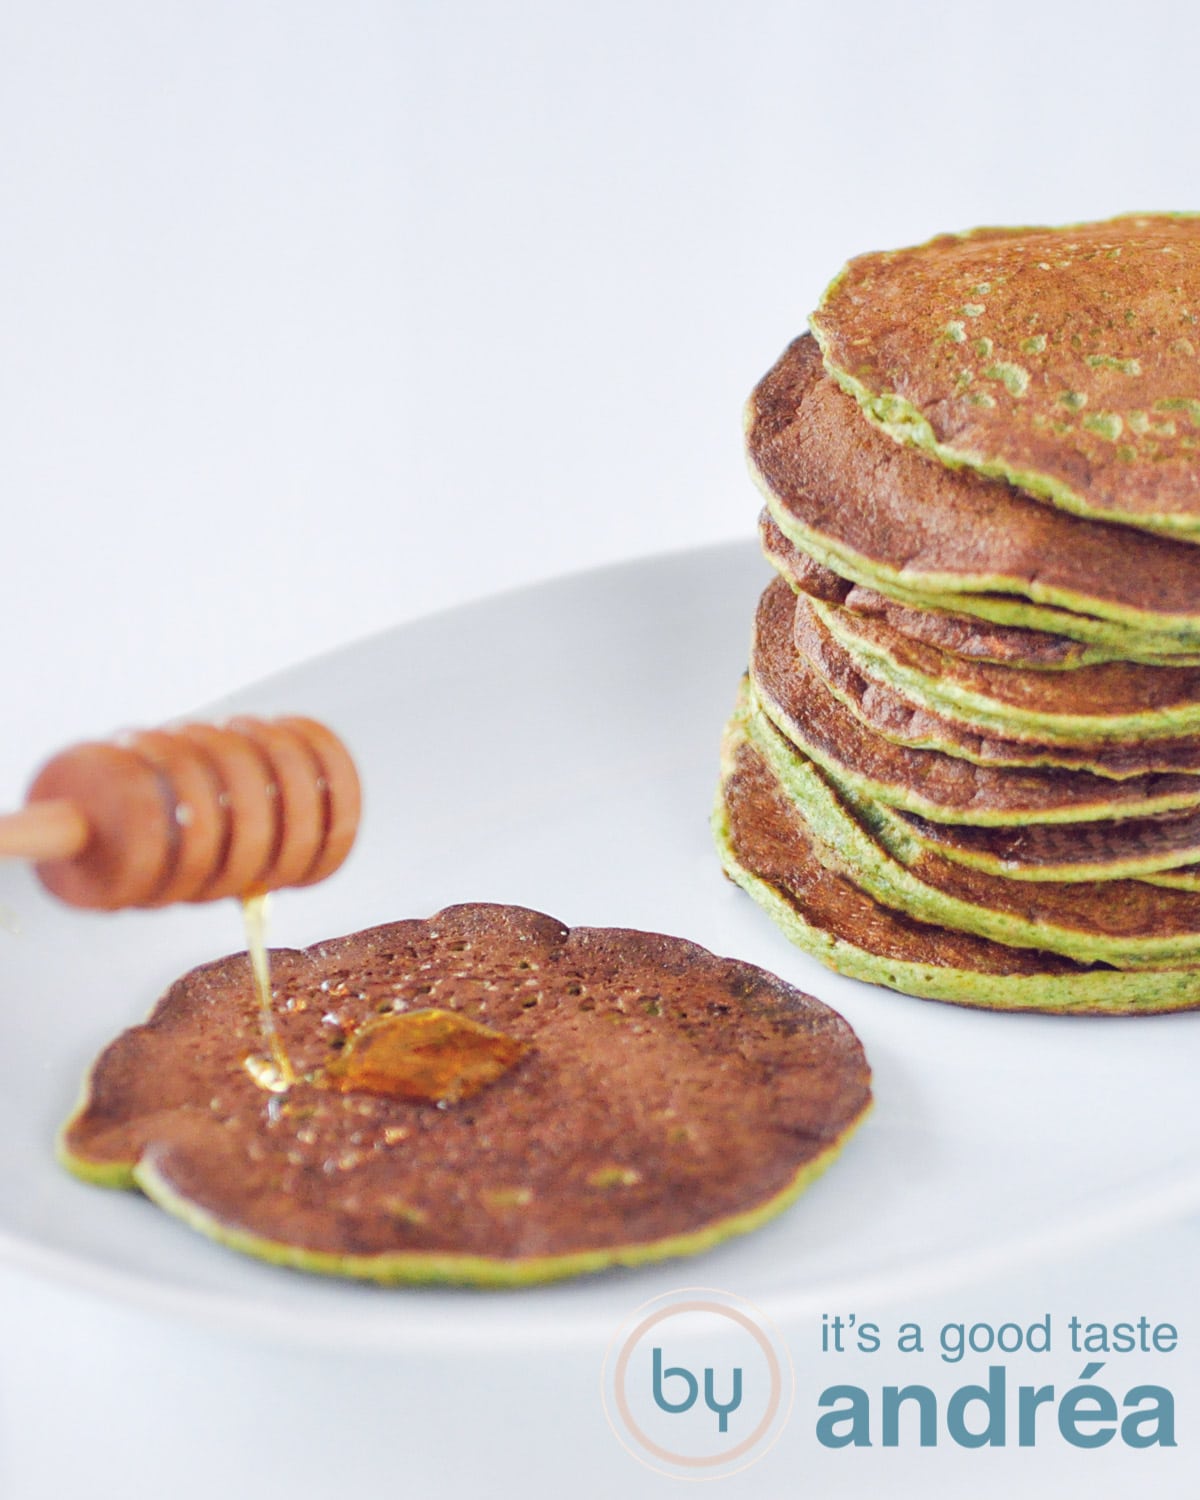 Een wit bord met aan de linkerkant een gorzen pancake met honing drizzle en aan de rechterkant een stapel groene pancakes